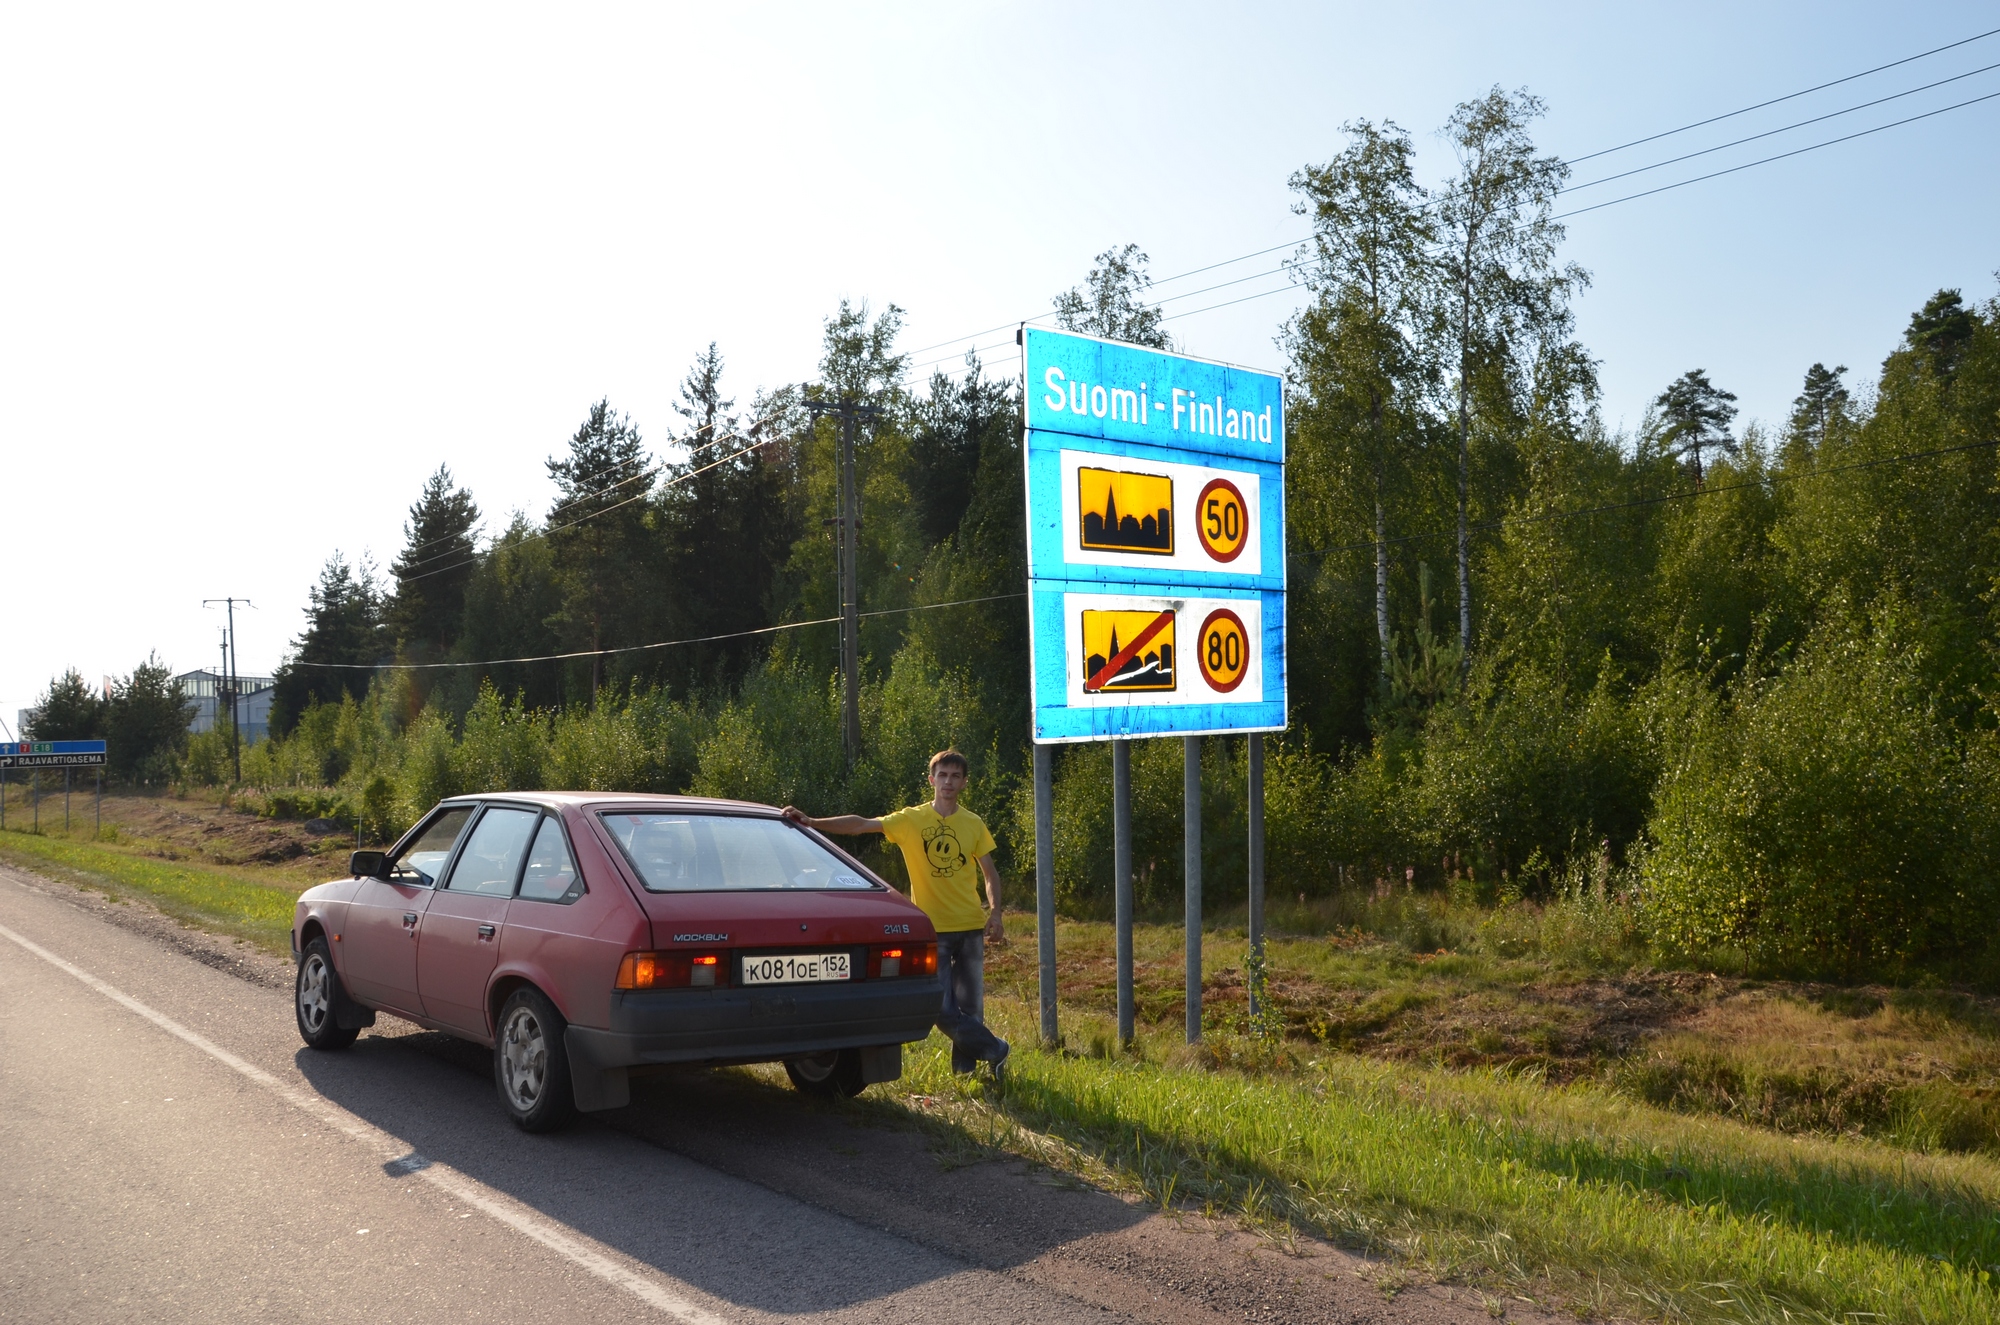 Выезд в финляндию на автомобиле в 2020 году — документы, пересечение и прохождение границы